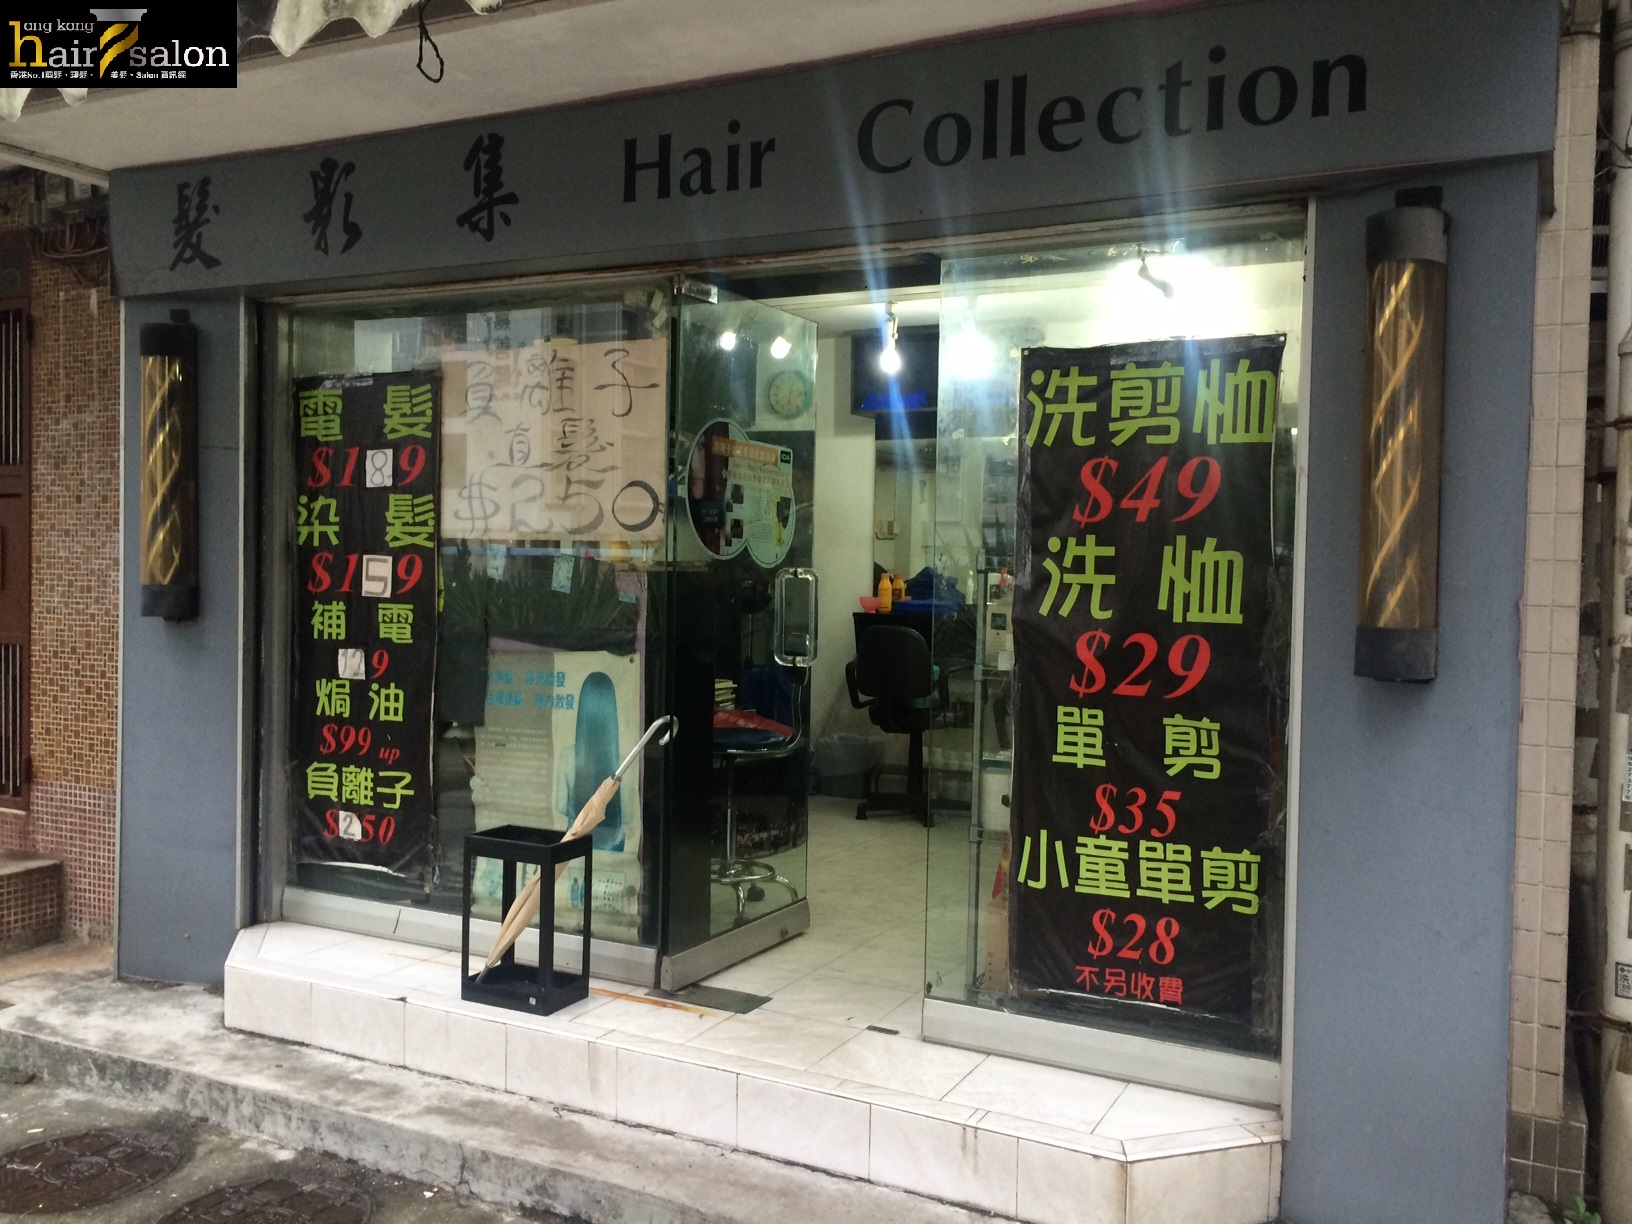 髮型屋: 髮影集 Hair Collection